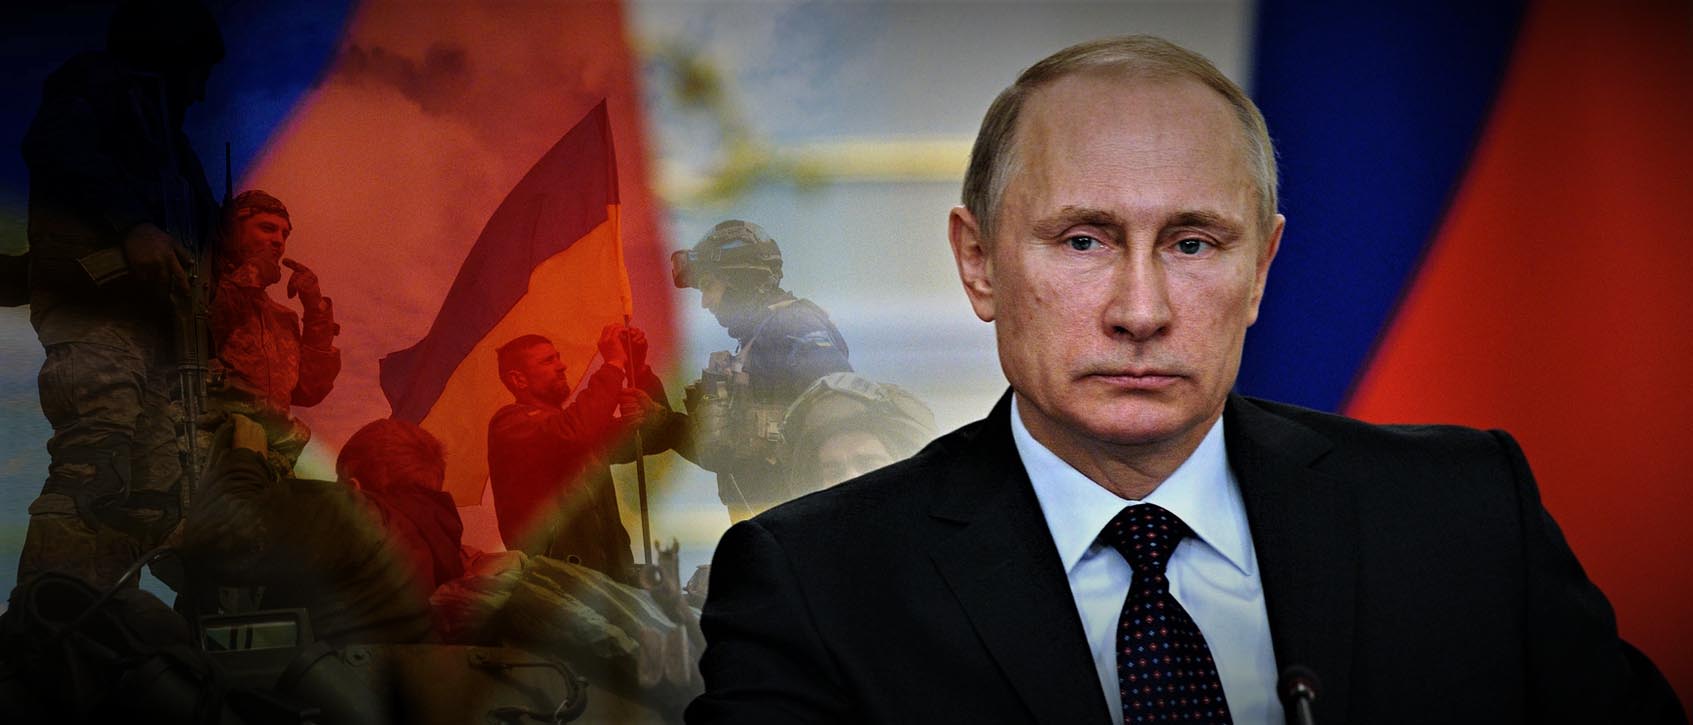 Β.Πούτιν: «71.000 Ουκρανοί έχουν σκοτωθεί στην αντεπίθεση – Οι ΗΠΑ ευθύνονται για την συνέχιση του πολέμου»